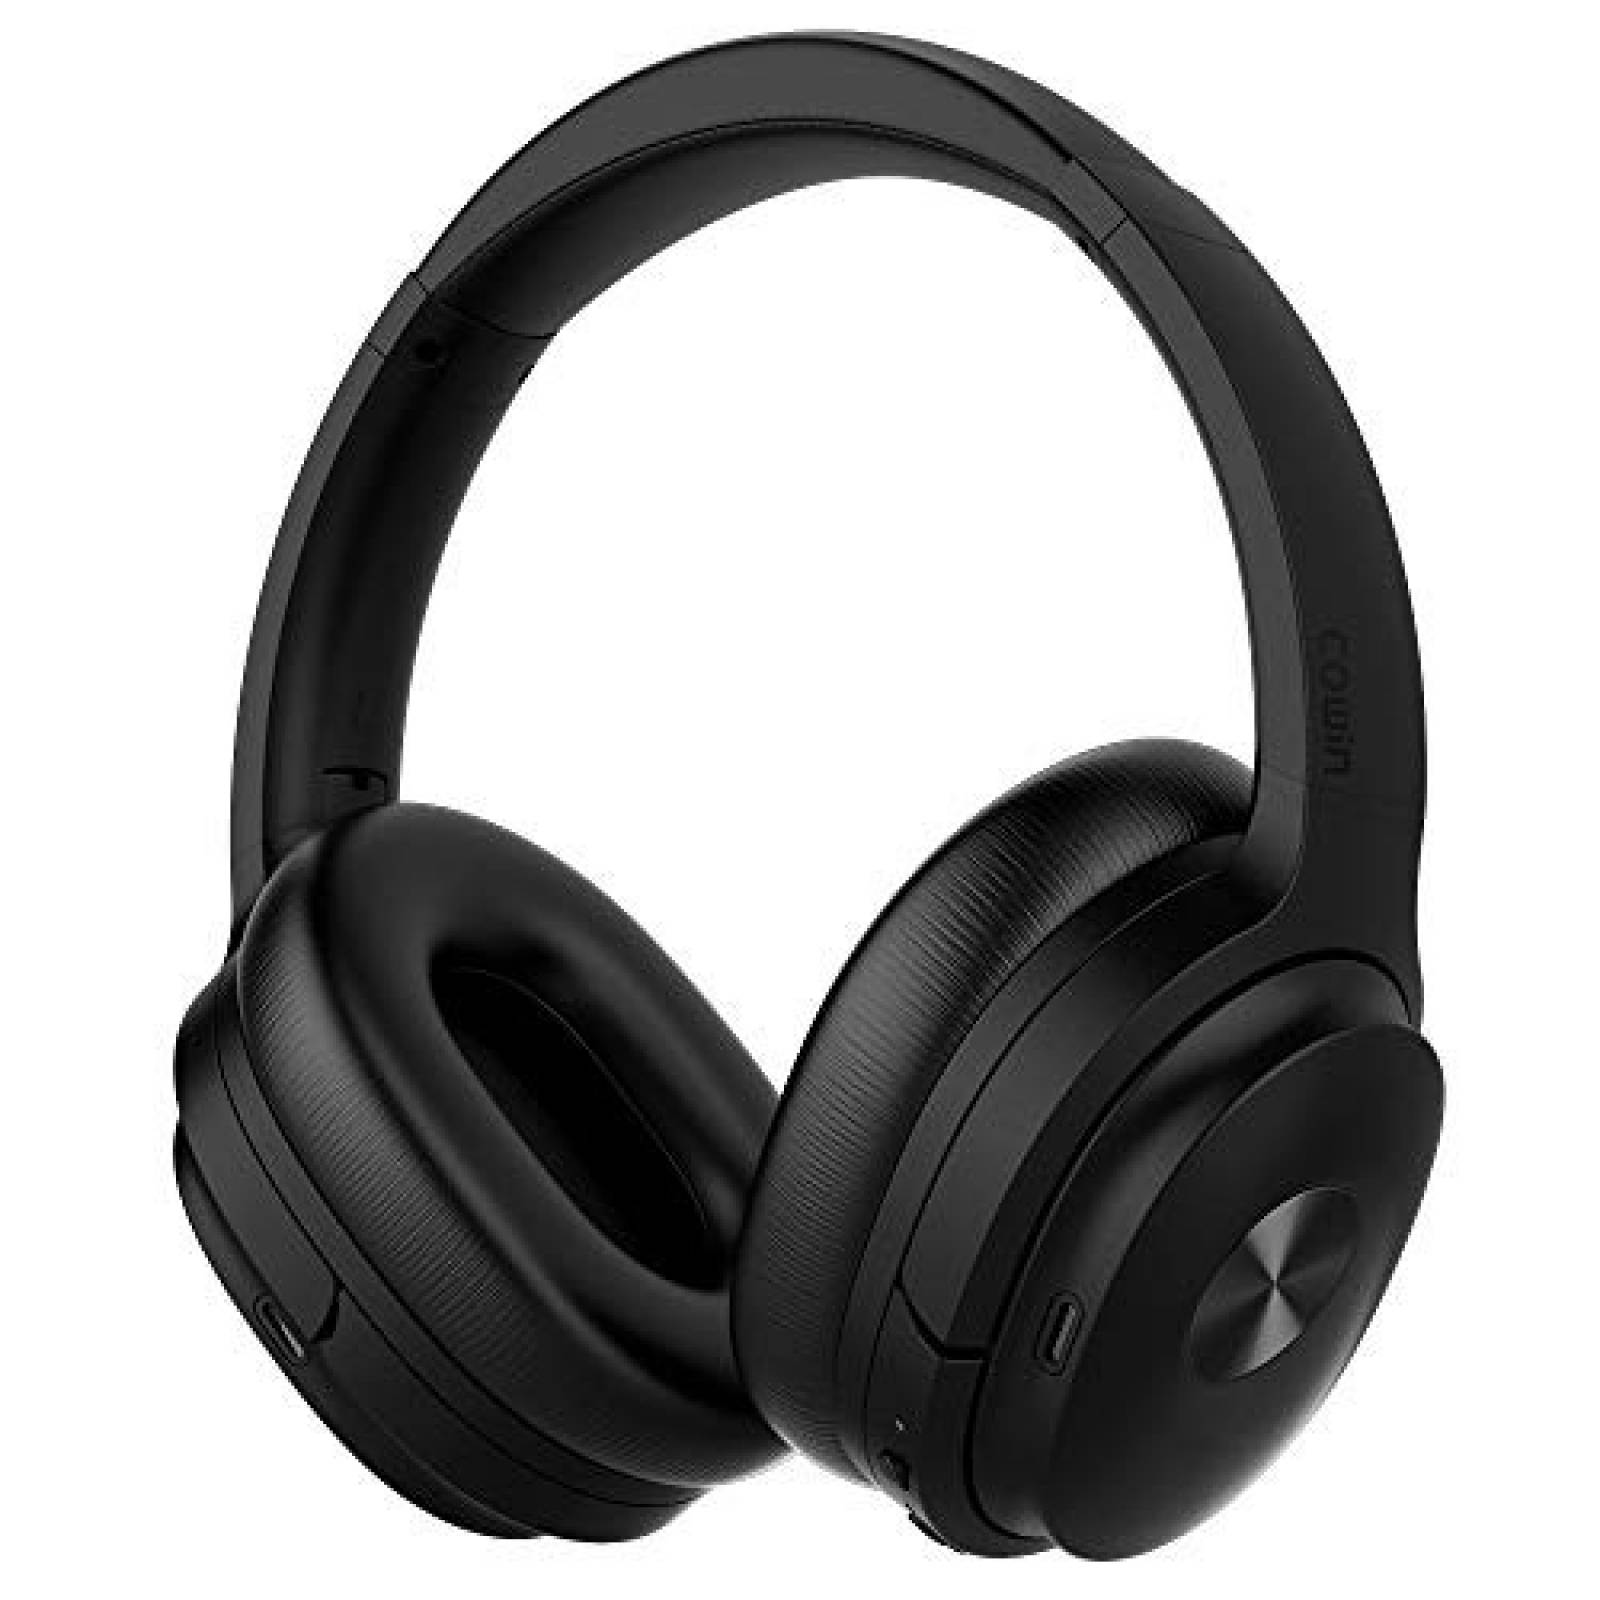 Audífonos de oído COWIN SE7 cancelación de sonido -Negro